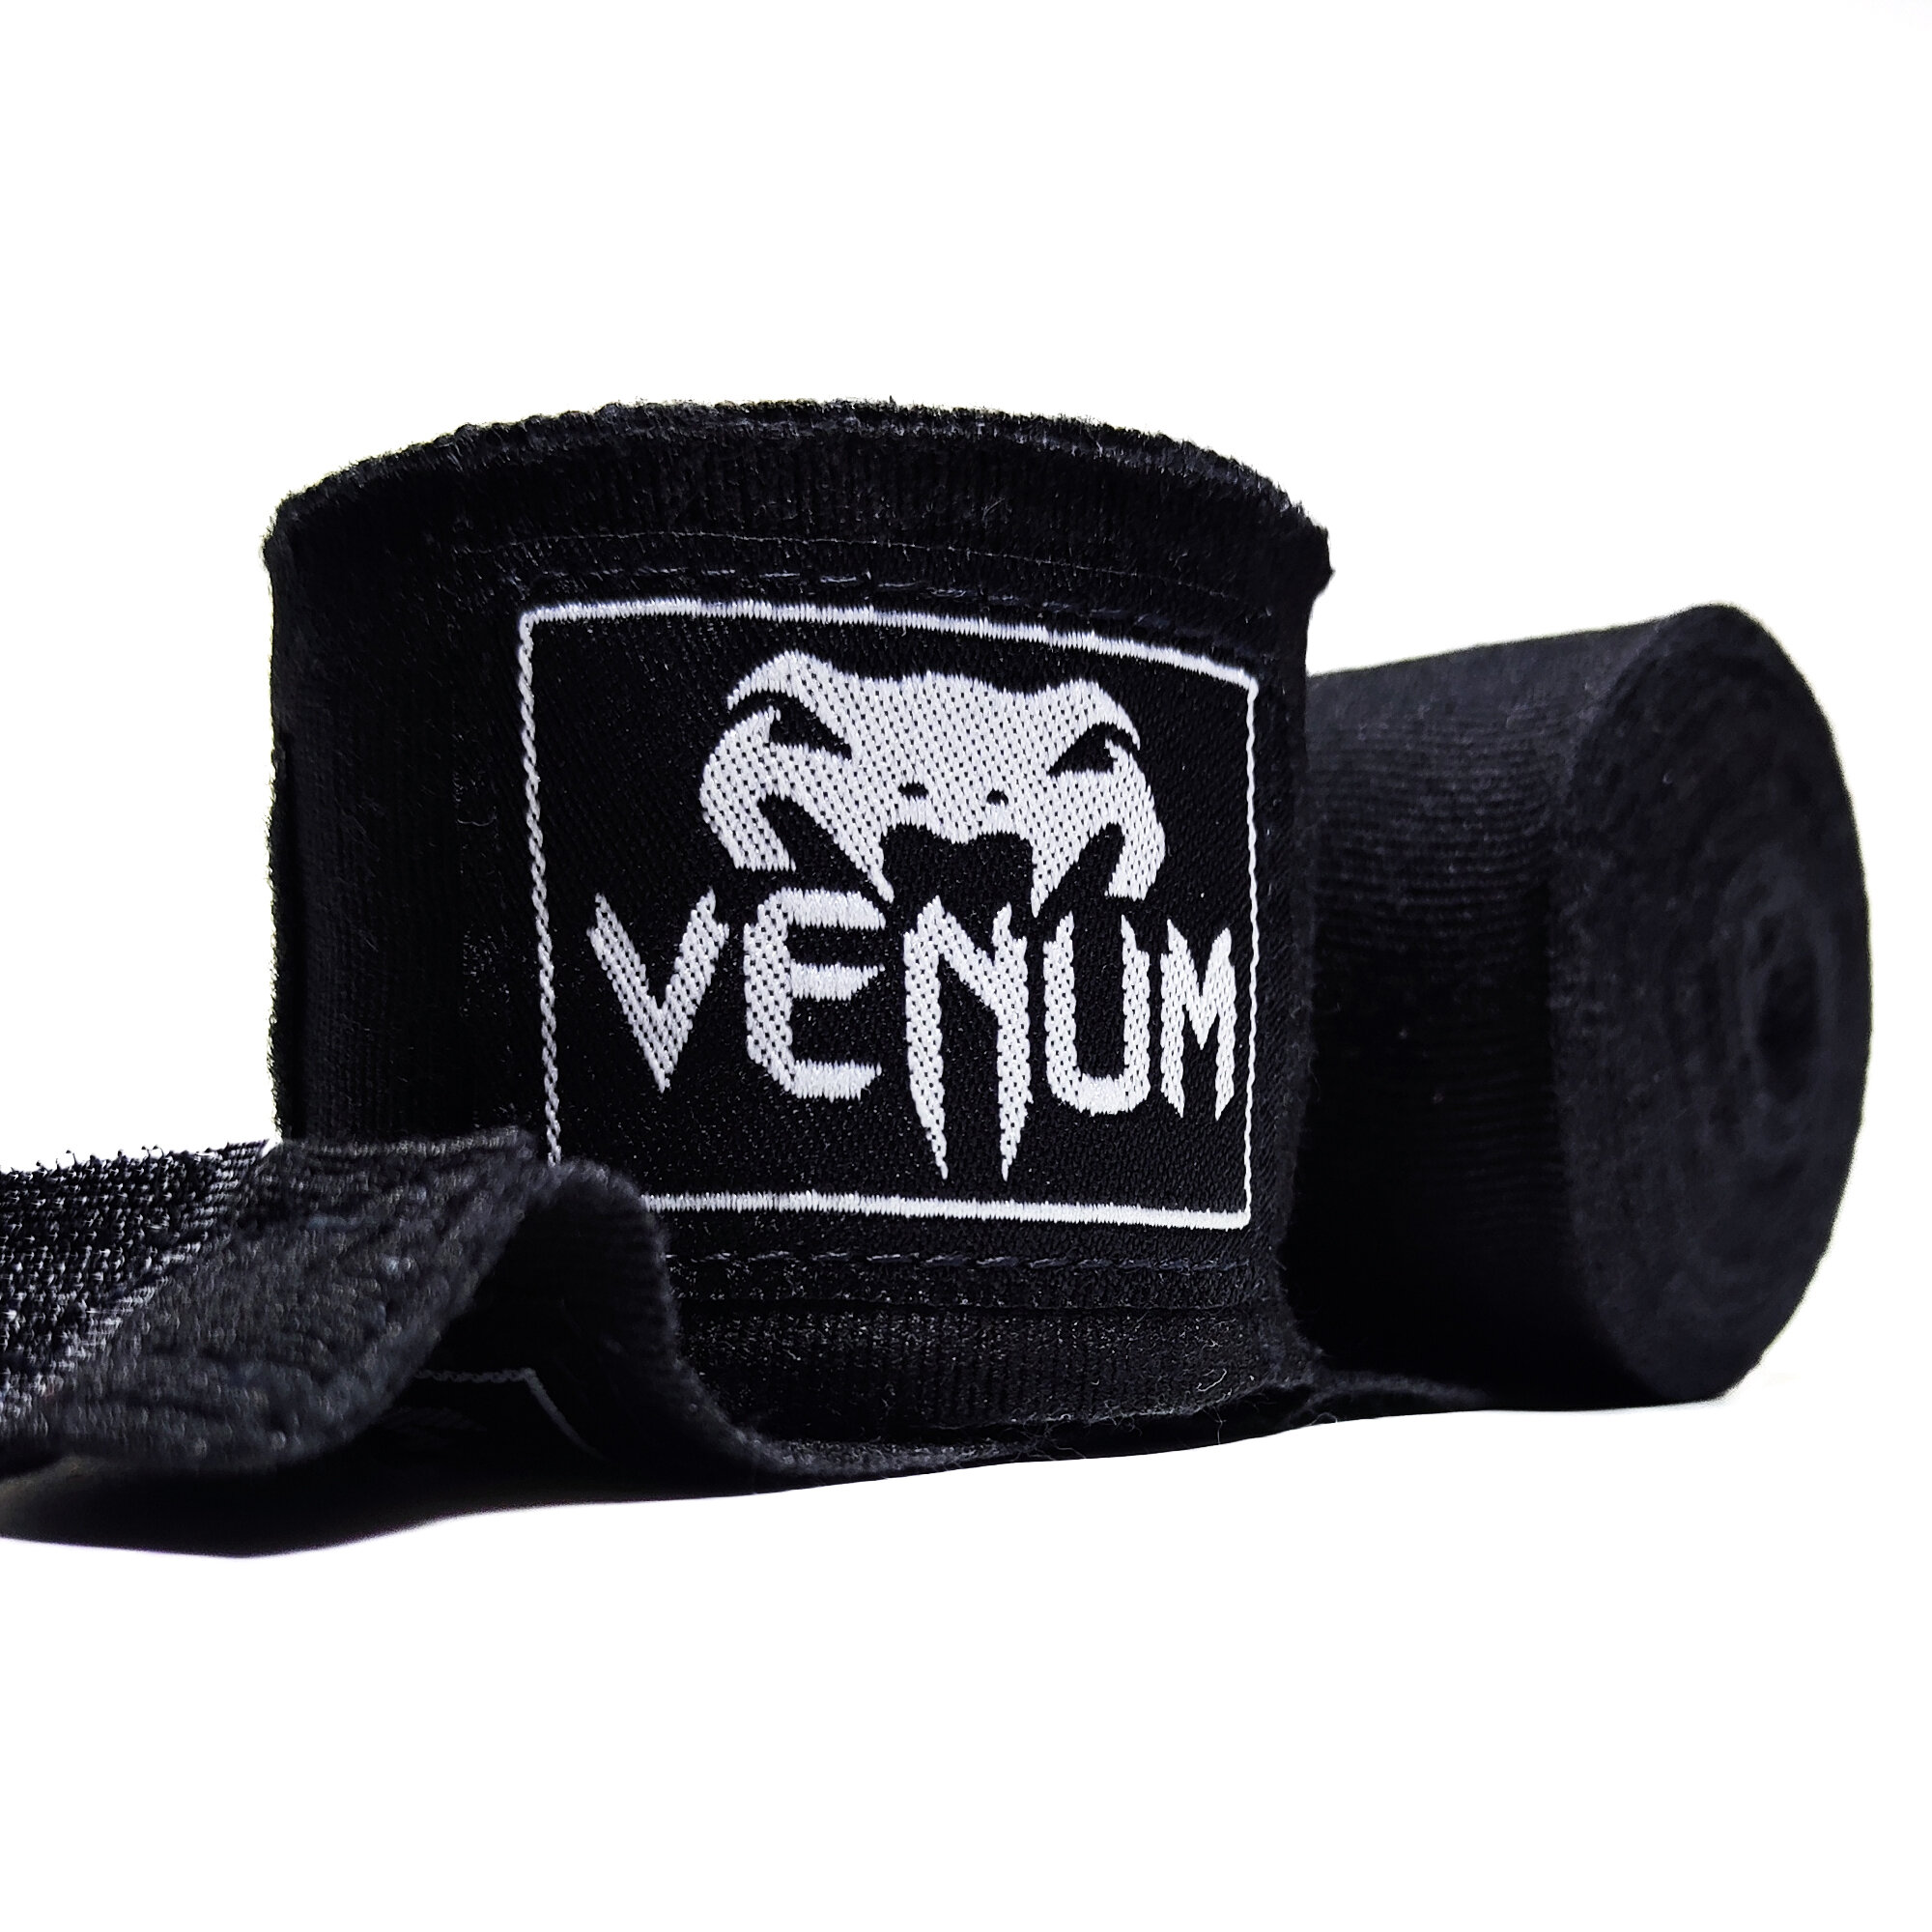 Боксерские бинты Venum Kontact, чёрные, 3.5 метра